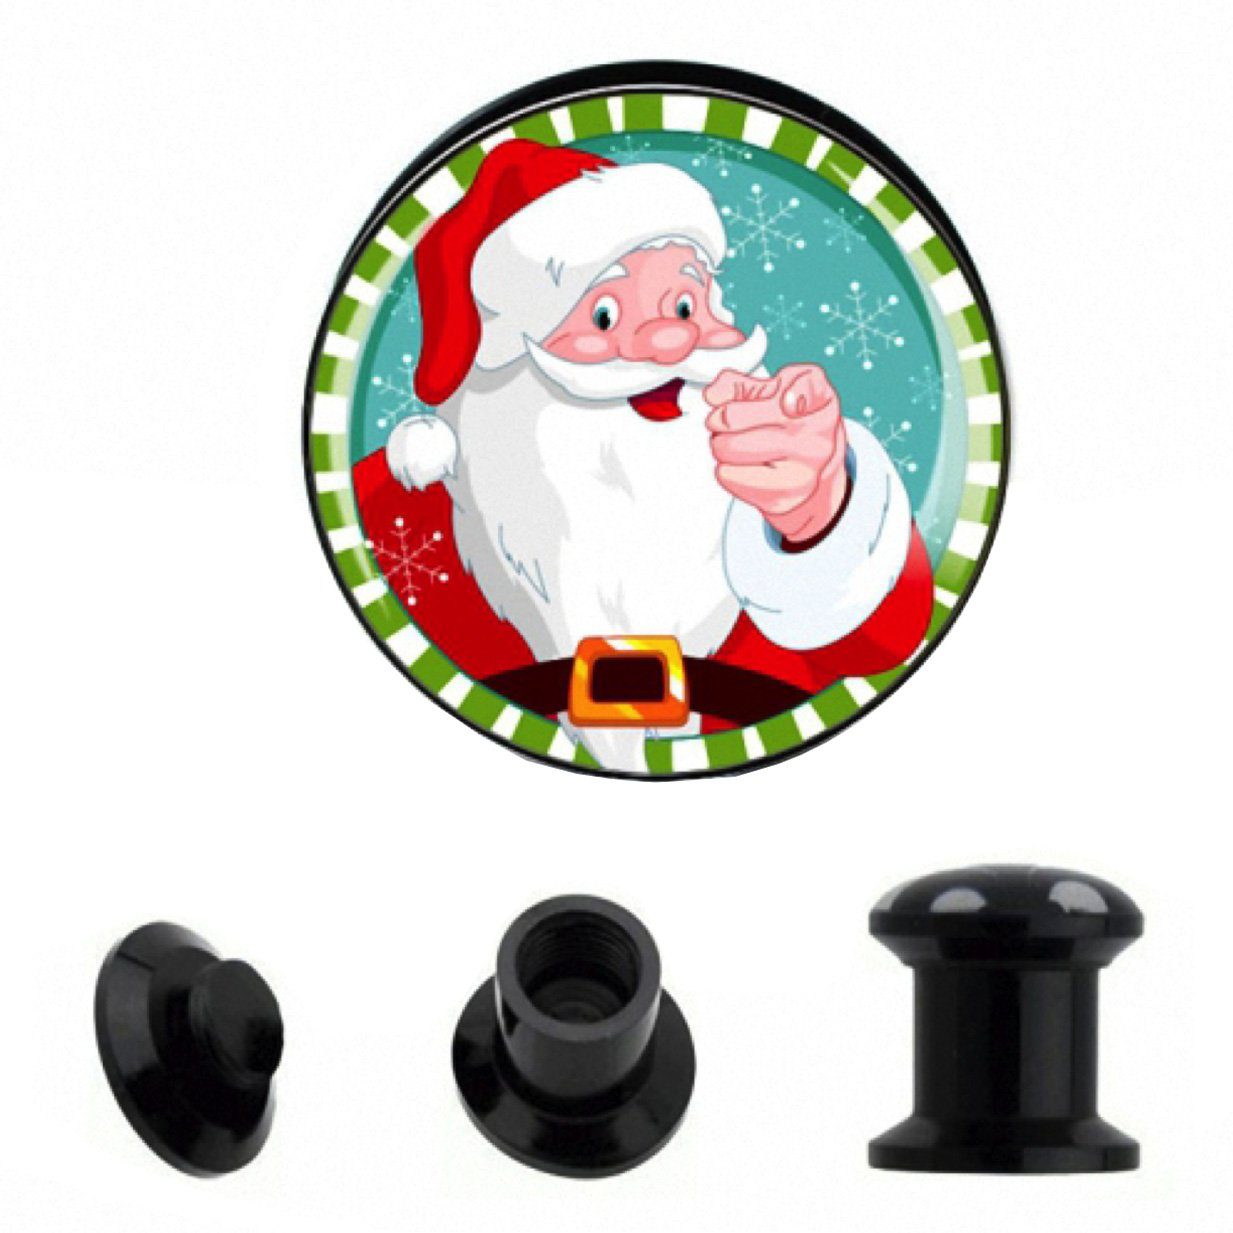 Weihnachtsmann, Plug Plug Picture Flesh Piercing Motiv Weihnachtsmann Tunnel Picture Weihnachts Taffstyle Ohrpiercing Ohr Weihnachts